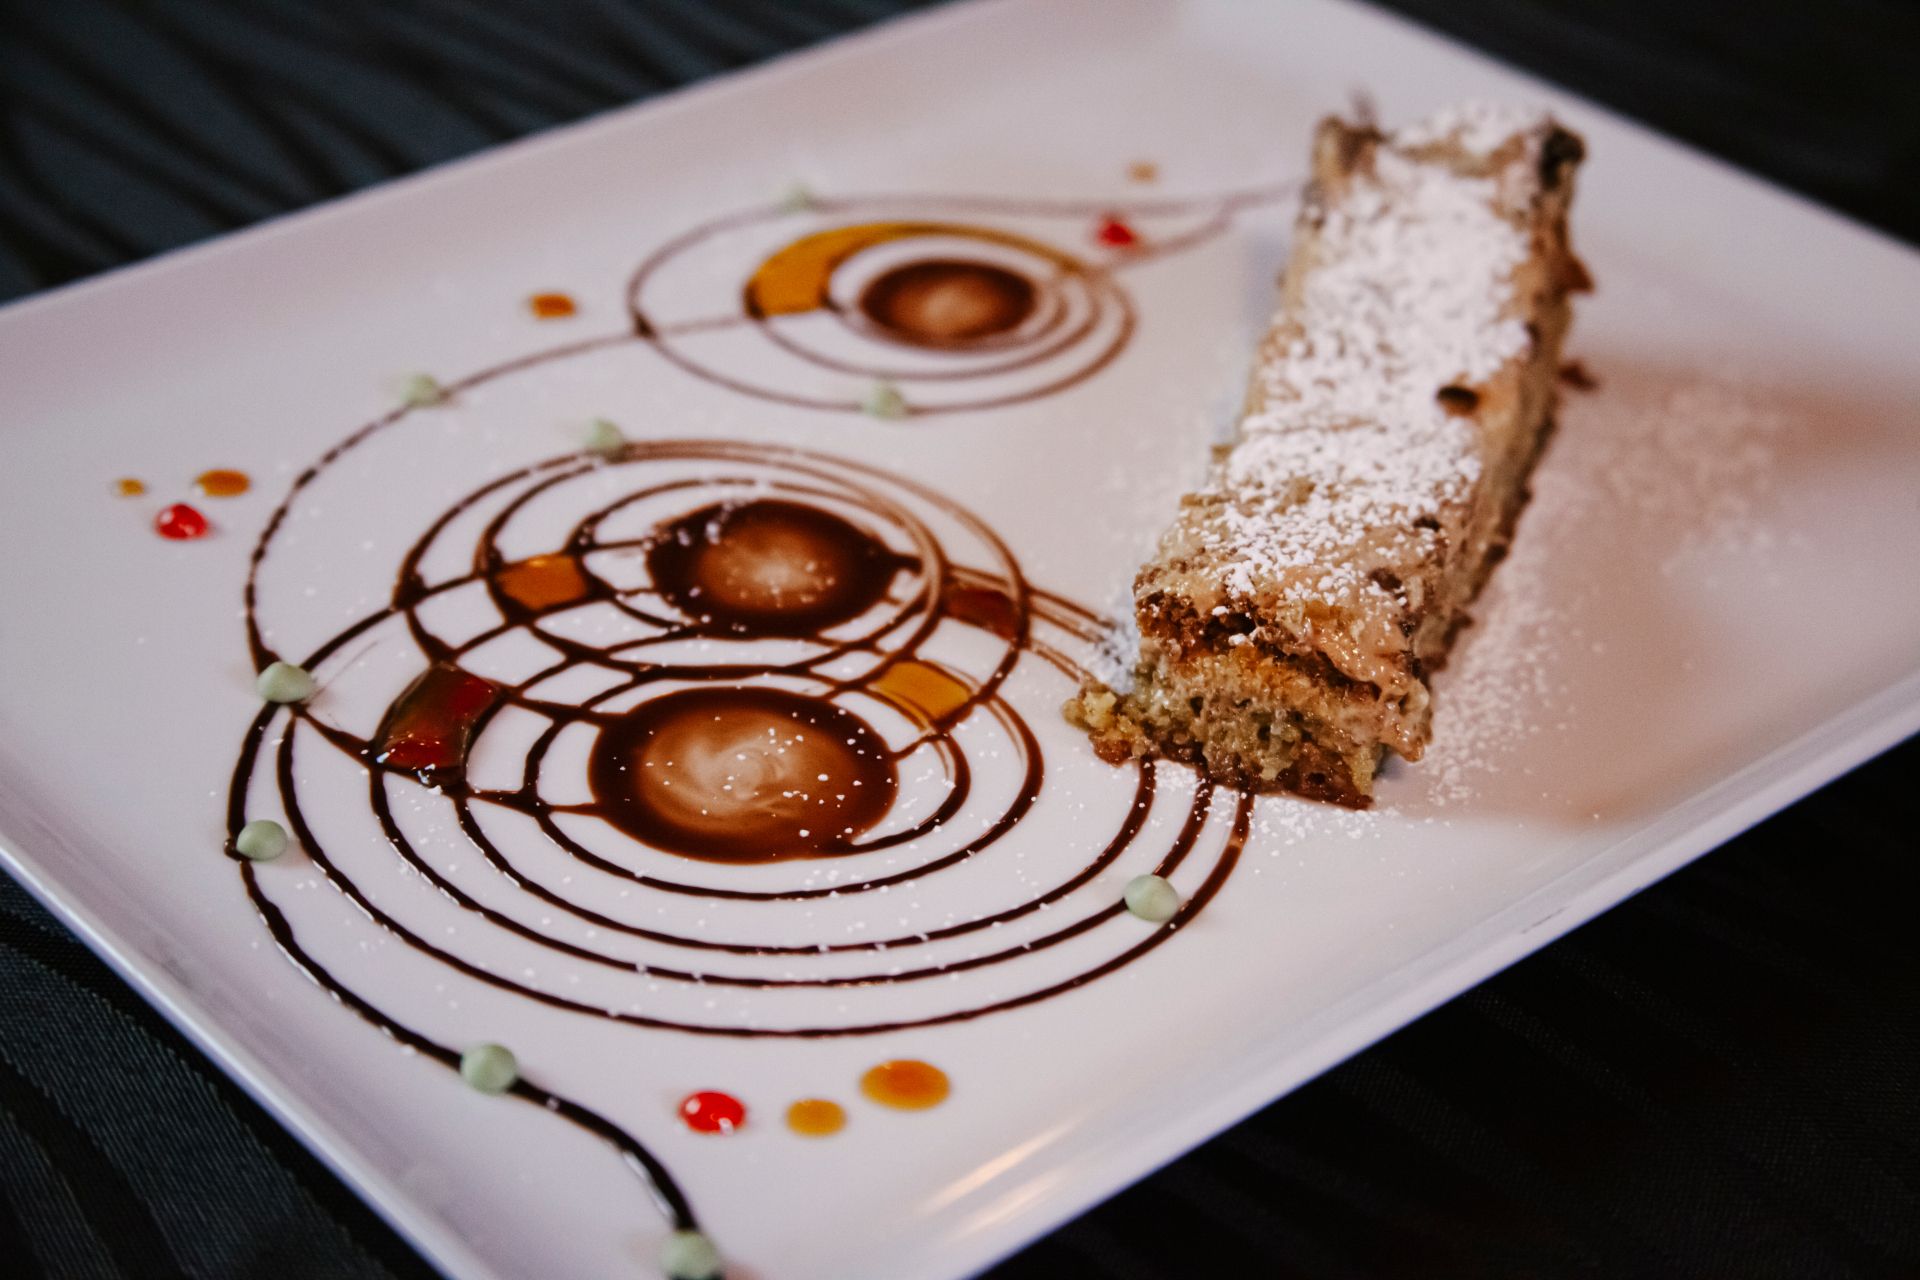 dessert la torta sbriciolata del ristorante La Tacchinella cucina tipica teramana abruzzese a Canzano